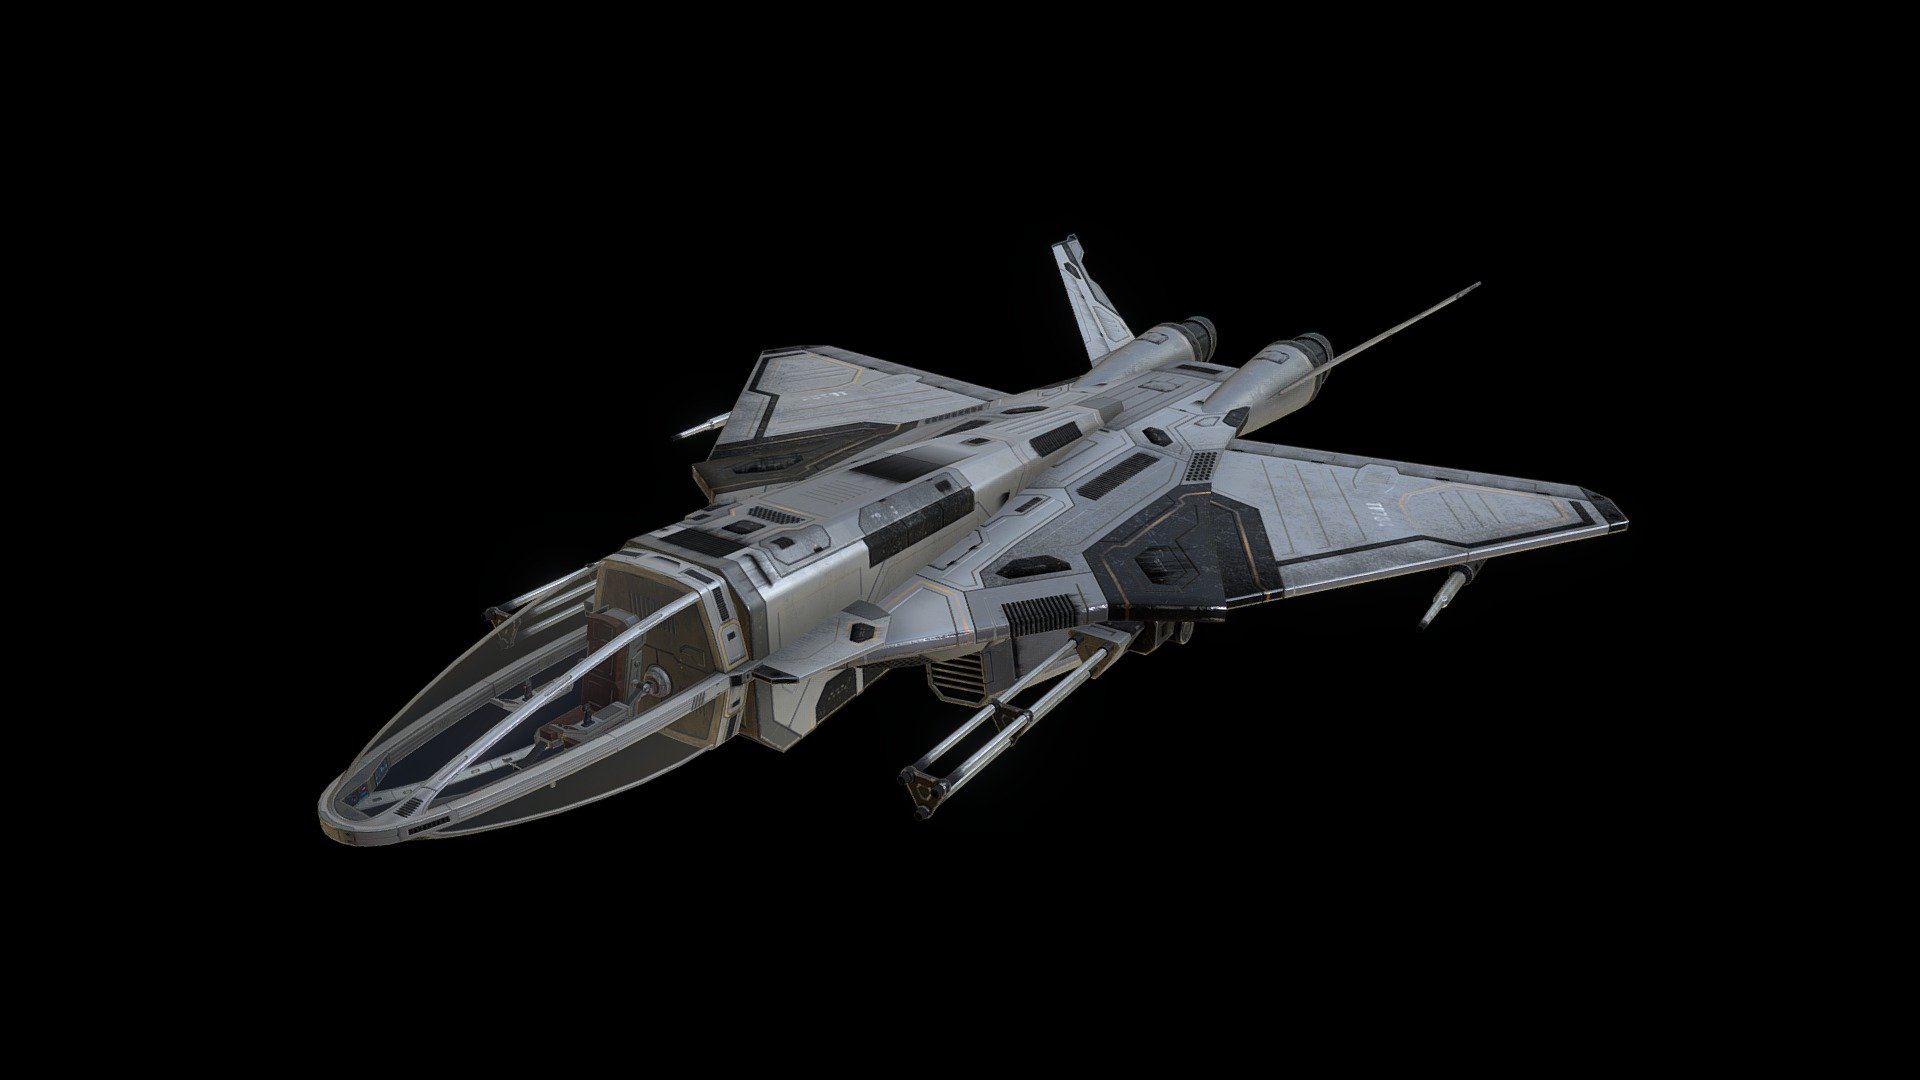 For more info visit: Ebal Studios - Hi-Rez Spaceships Creator Sample - 3D model by Ebal Studios (@EbalStudios) 3d model